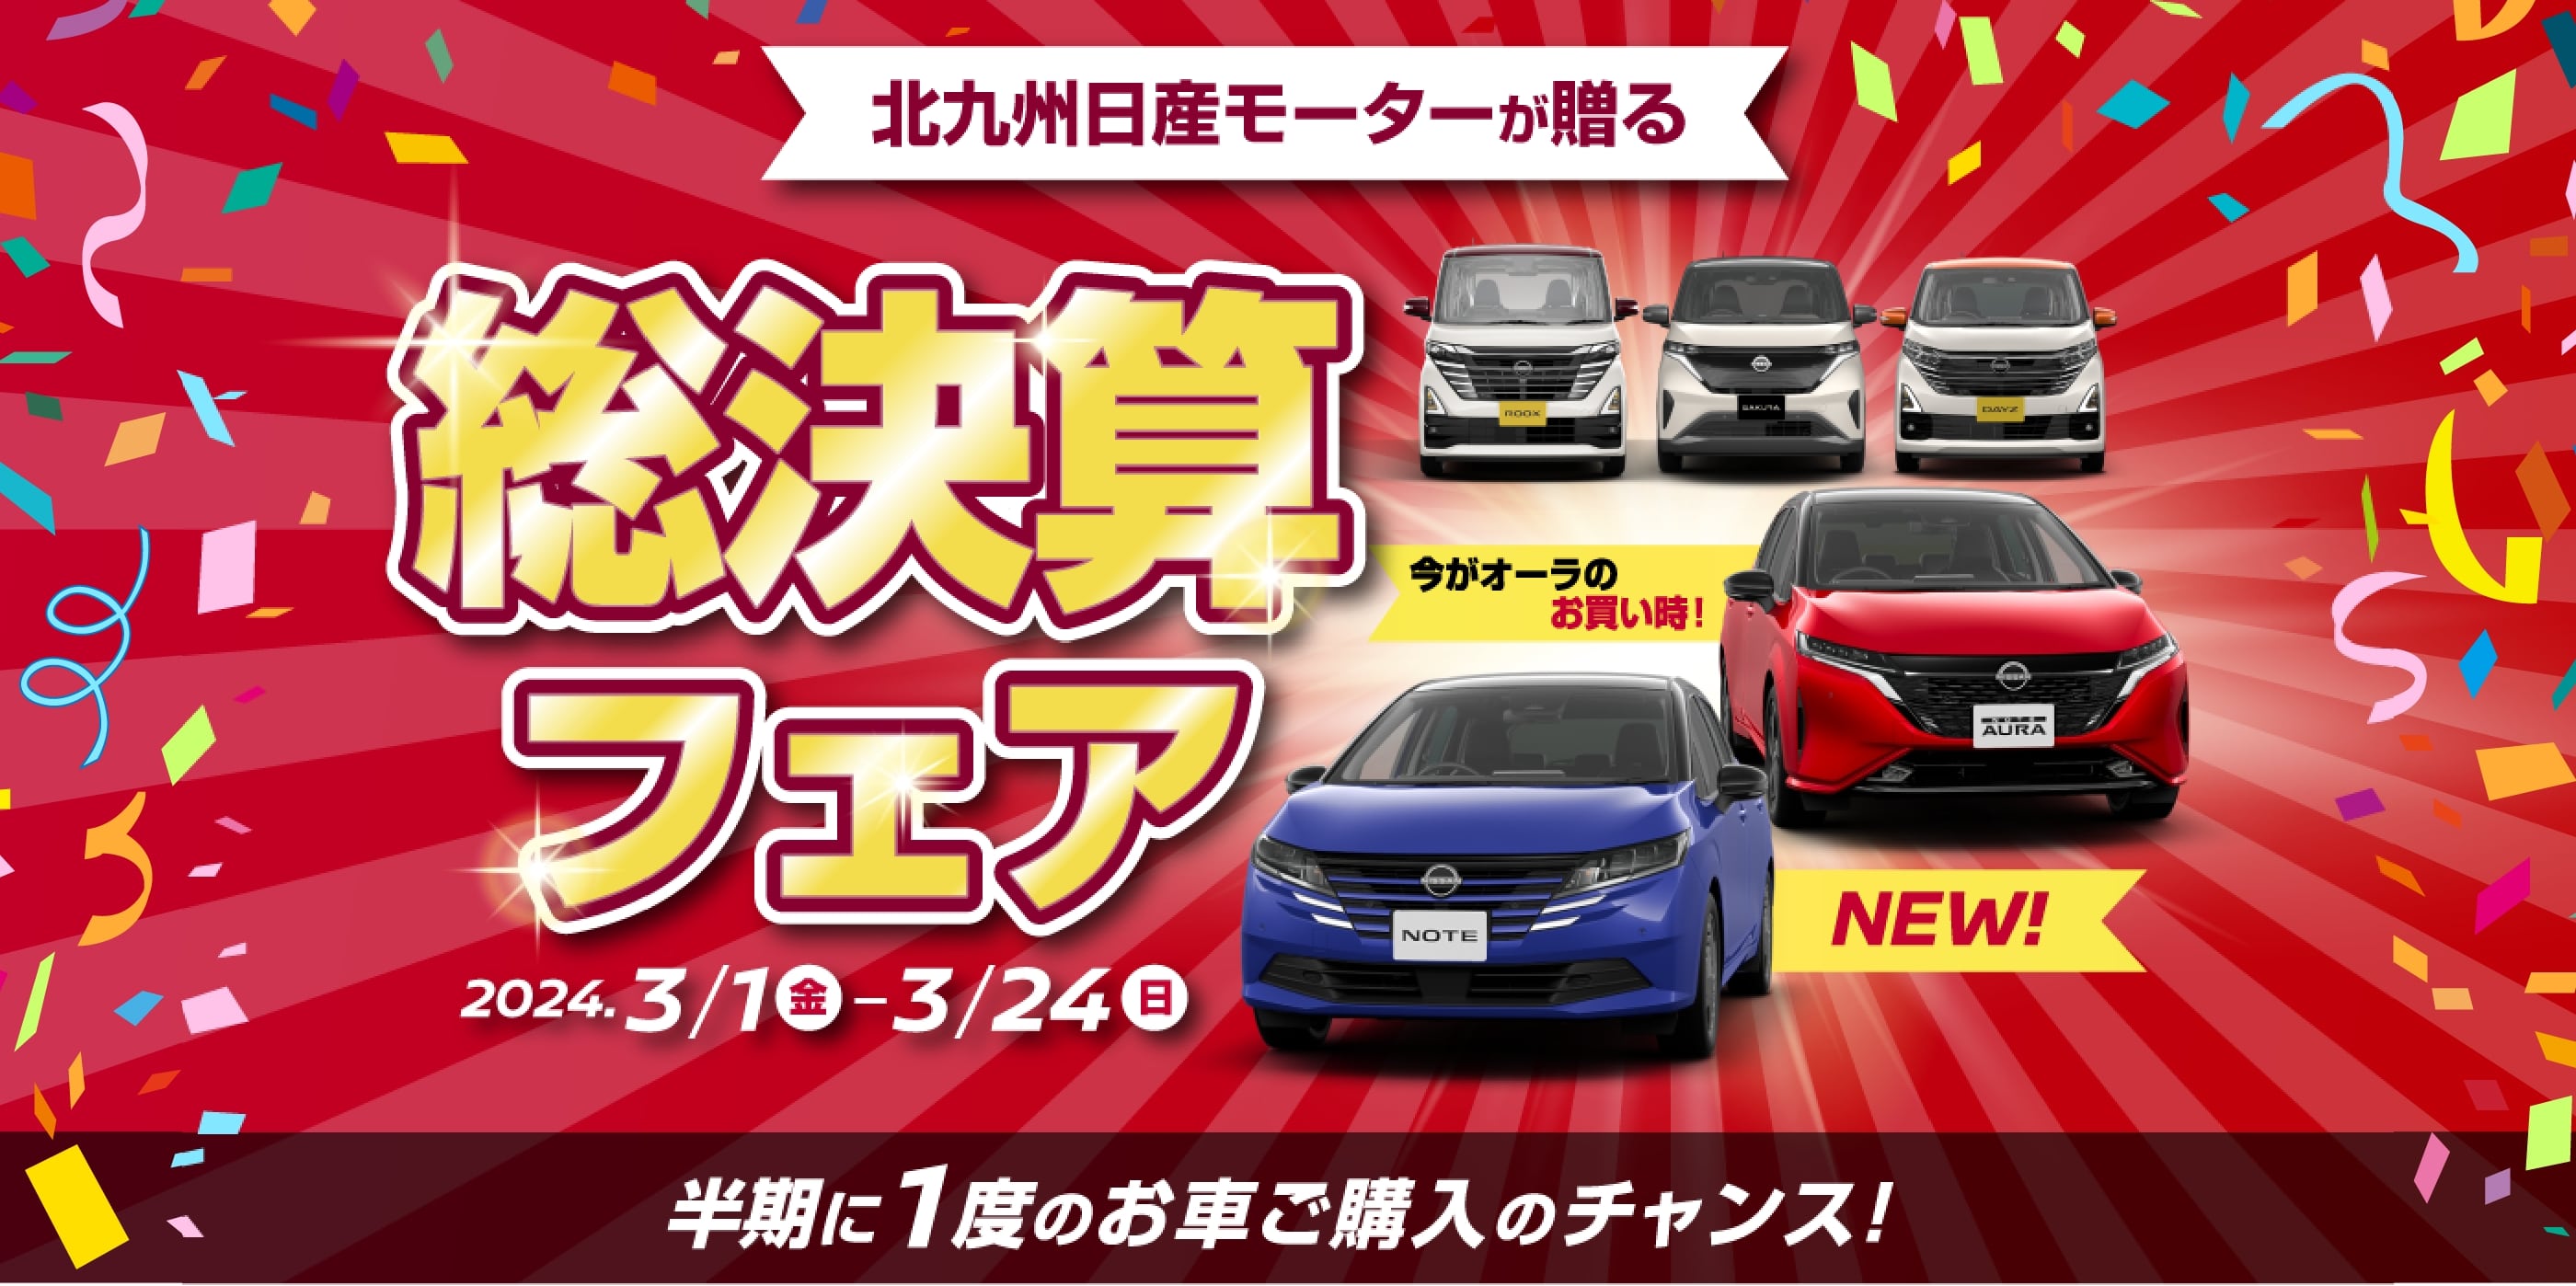 北九州日産モーターが贈る決算フェア 半期に1度のお車ご購入のチャンス!